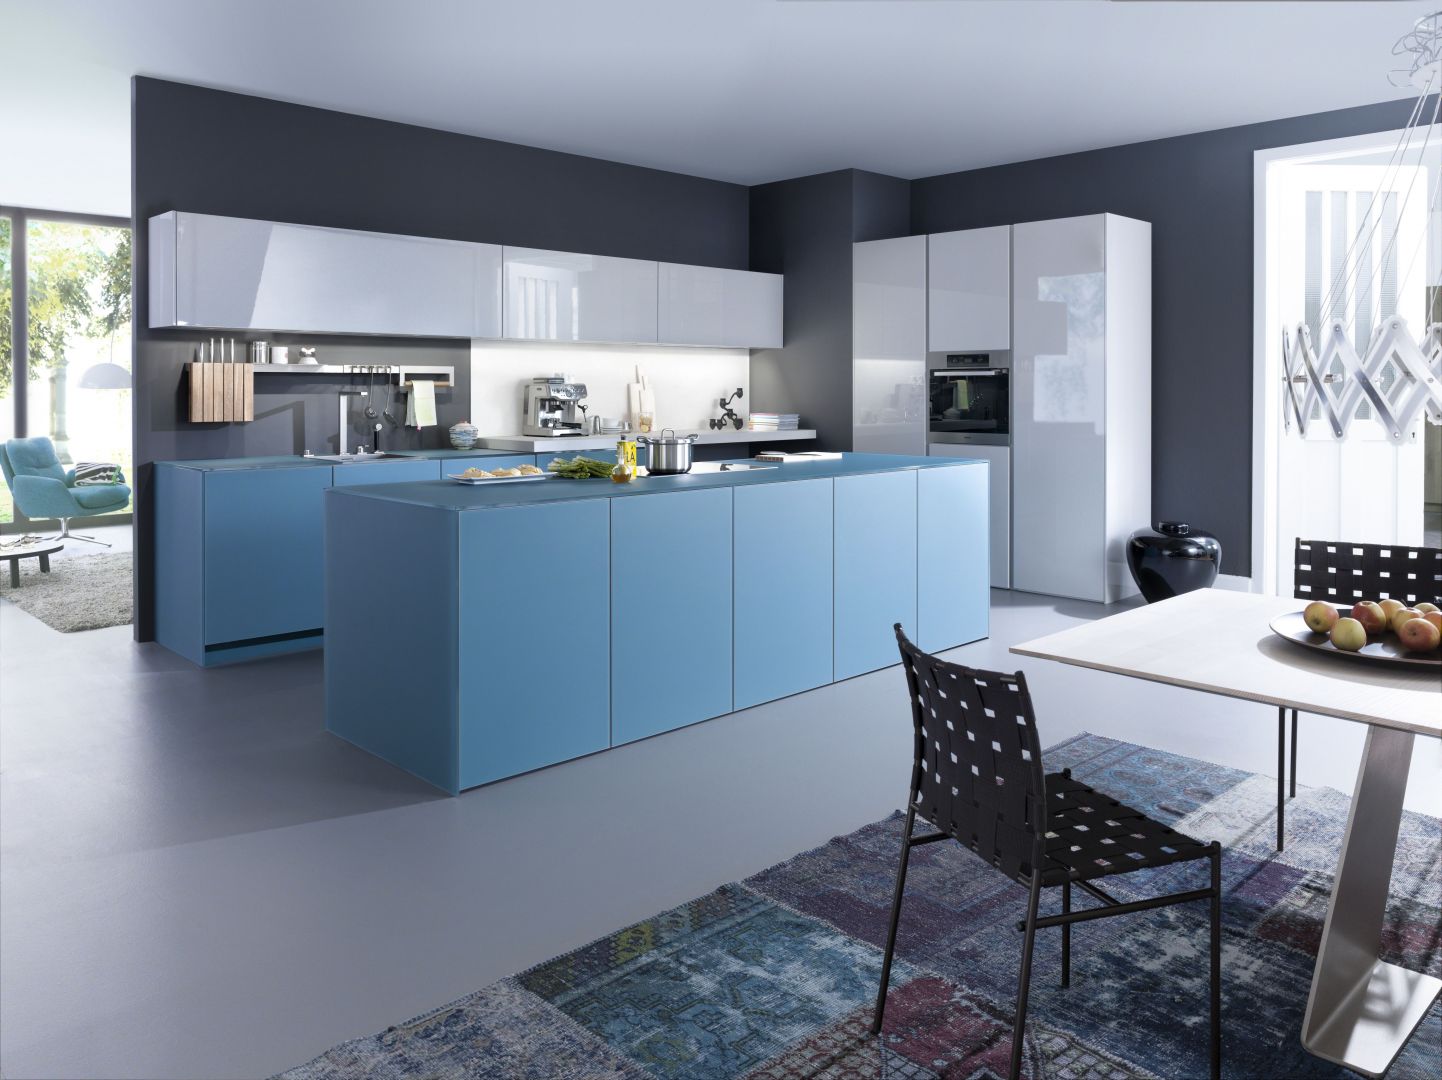 Błękit to kolor modny, ale niestety rzadko stosowany we wnętrzach kuchennych. Dzięki połączeniu z bielą prezentuje się świeżo i modnie. Warto więc pomyśleć o nim wybierając kolorystykę kuchni. Fot. Leicht, model Largo-FG